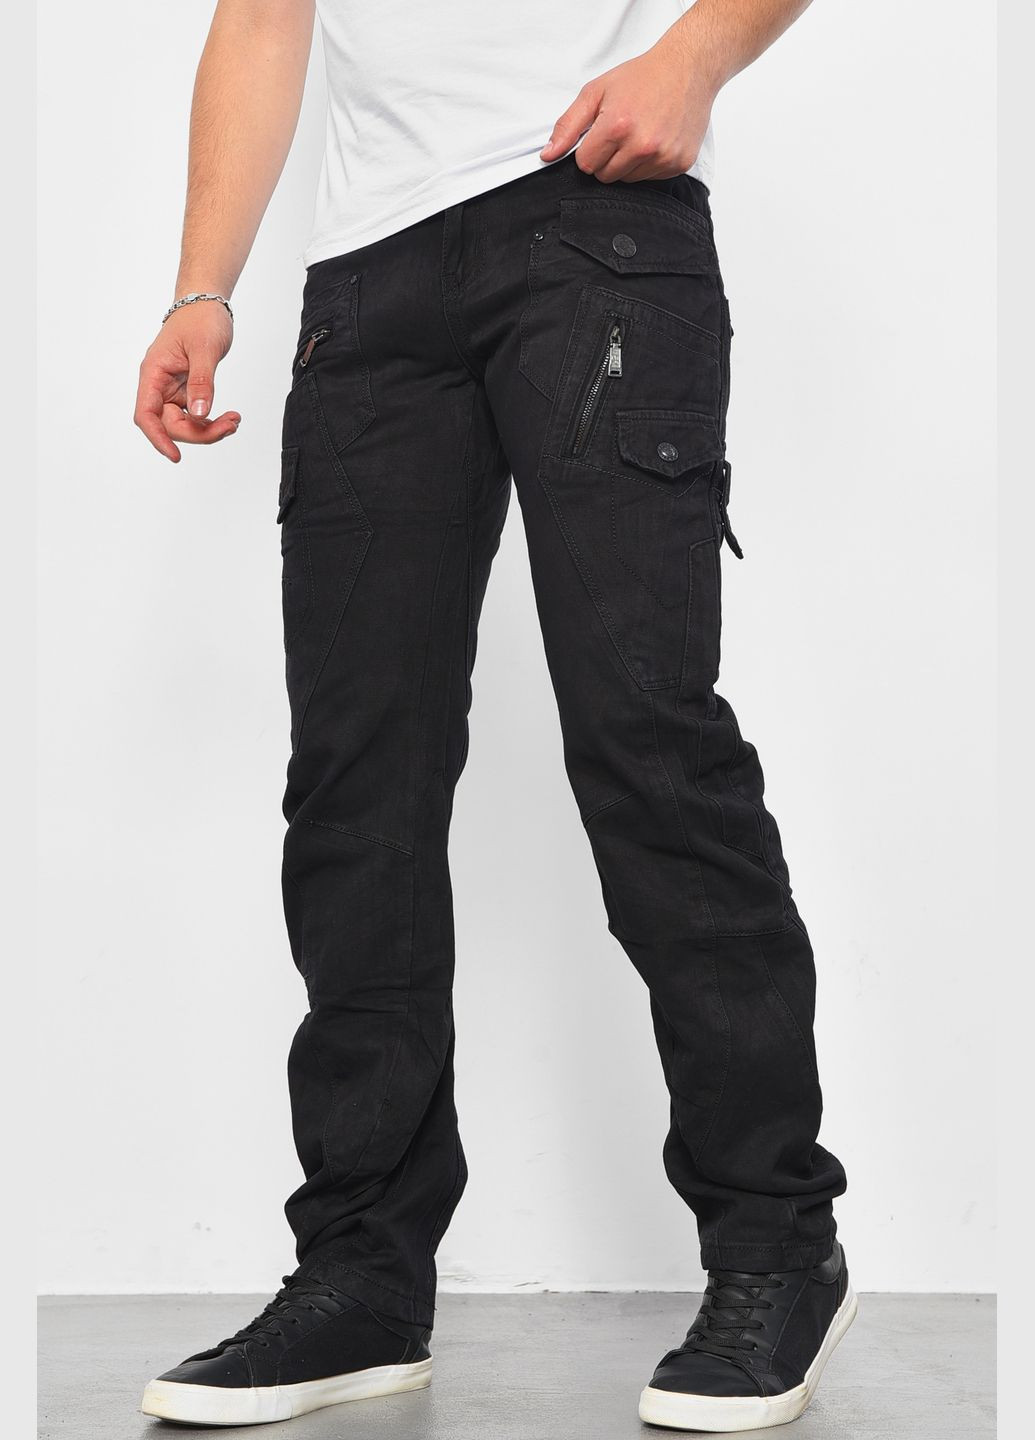 Черные демисезонные прямые джинсы мужские черного цвета Let's Shop